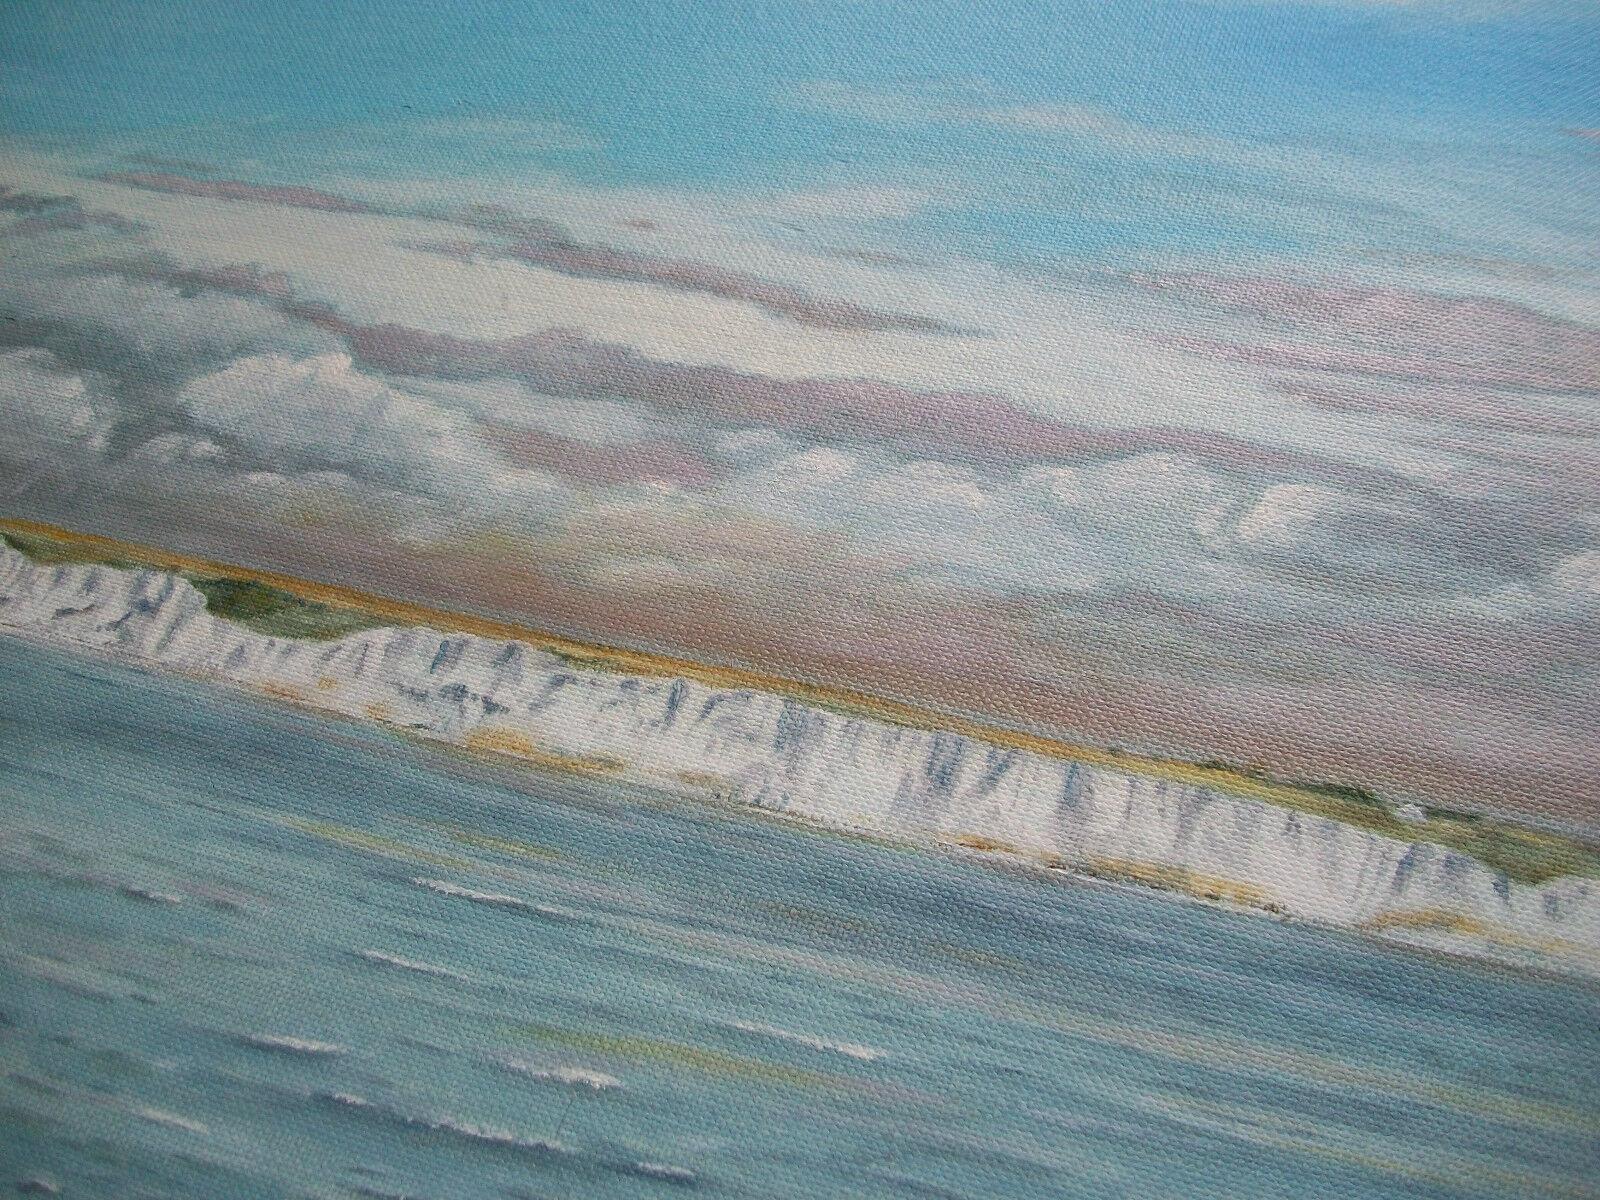 DAVID LANGDON - 'Cliffs of Dover' (ohne Titel) - Zeitgenössisches Ölgemälde auf Leinwand - signiert unten rechts - ungerahmt - Kanada - um 2000.

Ausgezeichneter Zustand - kein Verlust - keine Beschädigung - keine Restaurierung - bereit zum